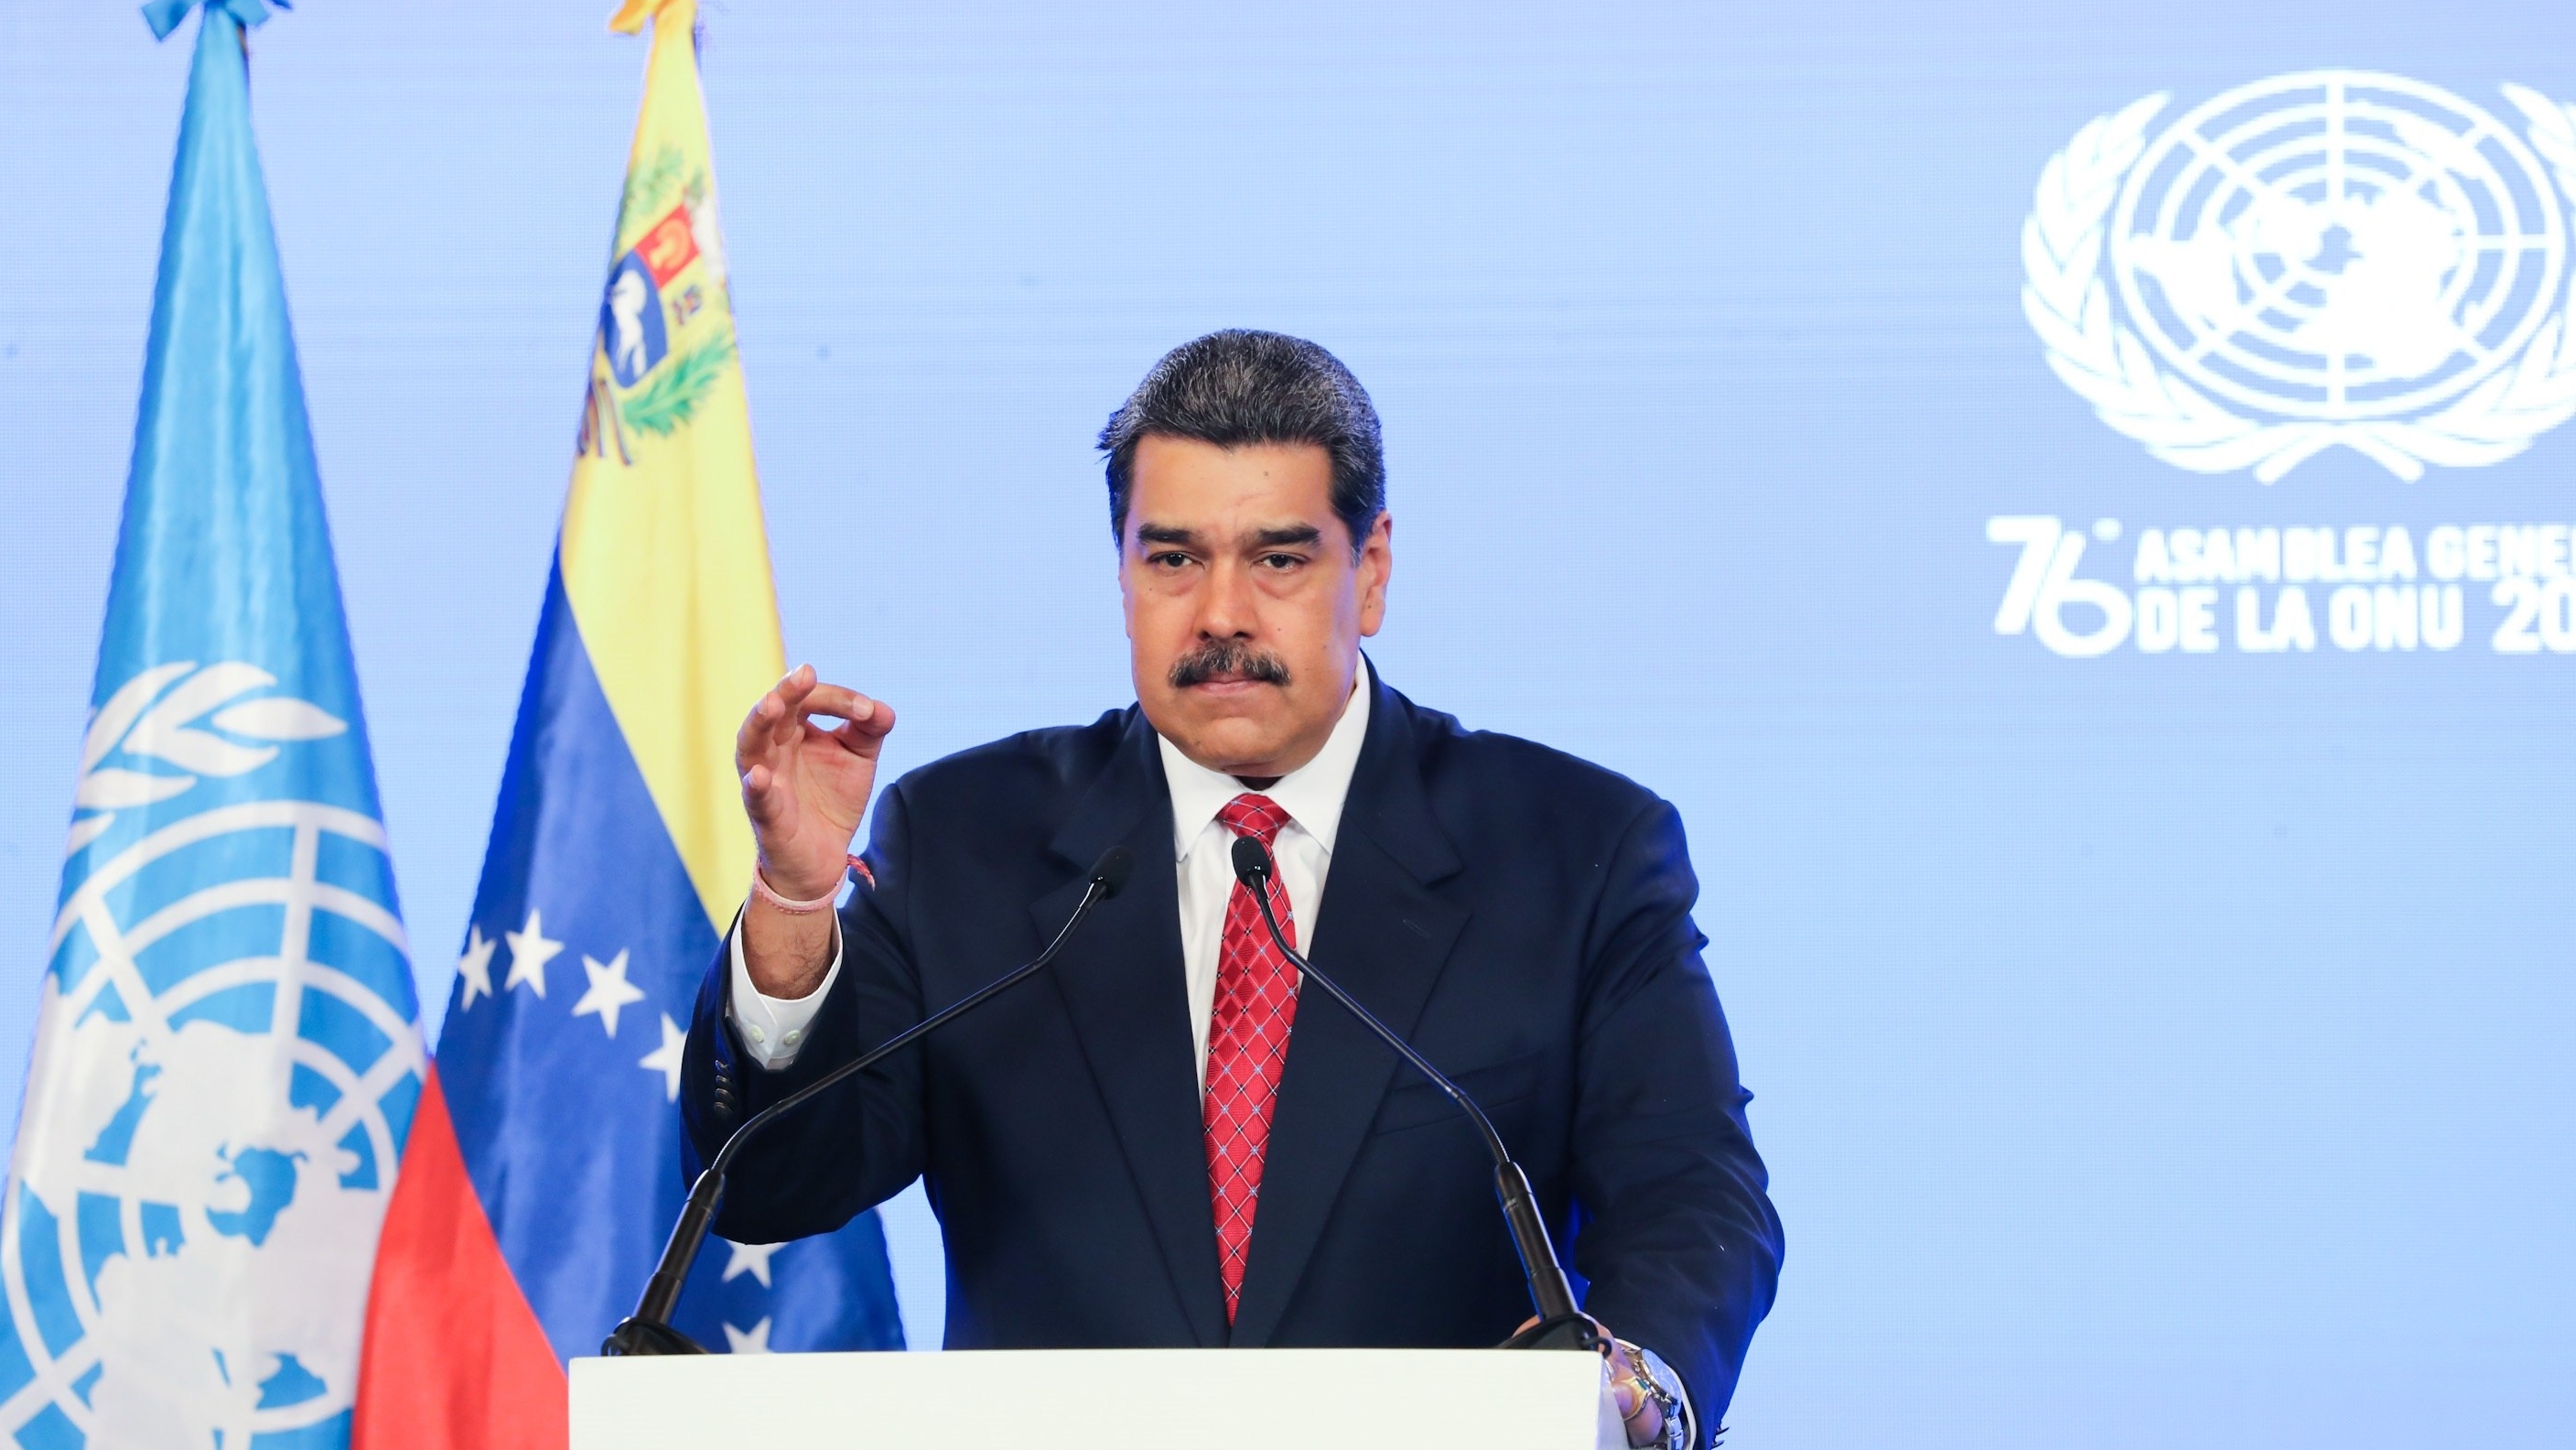 Na ONU, Maduro exige a suspensão de todas as sanções contra a Venezuela